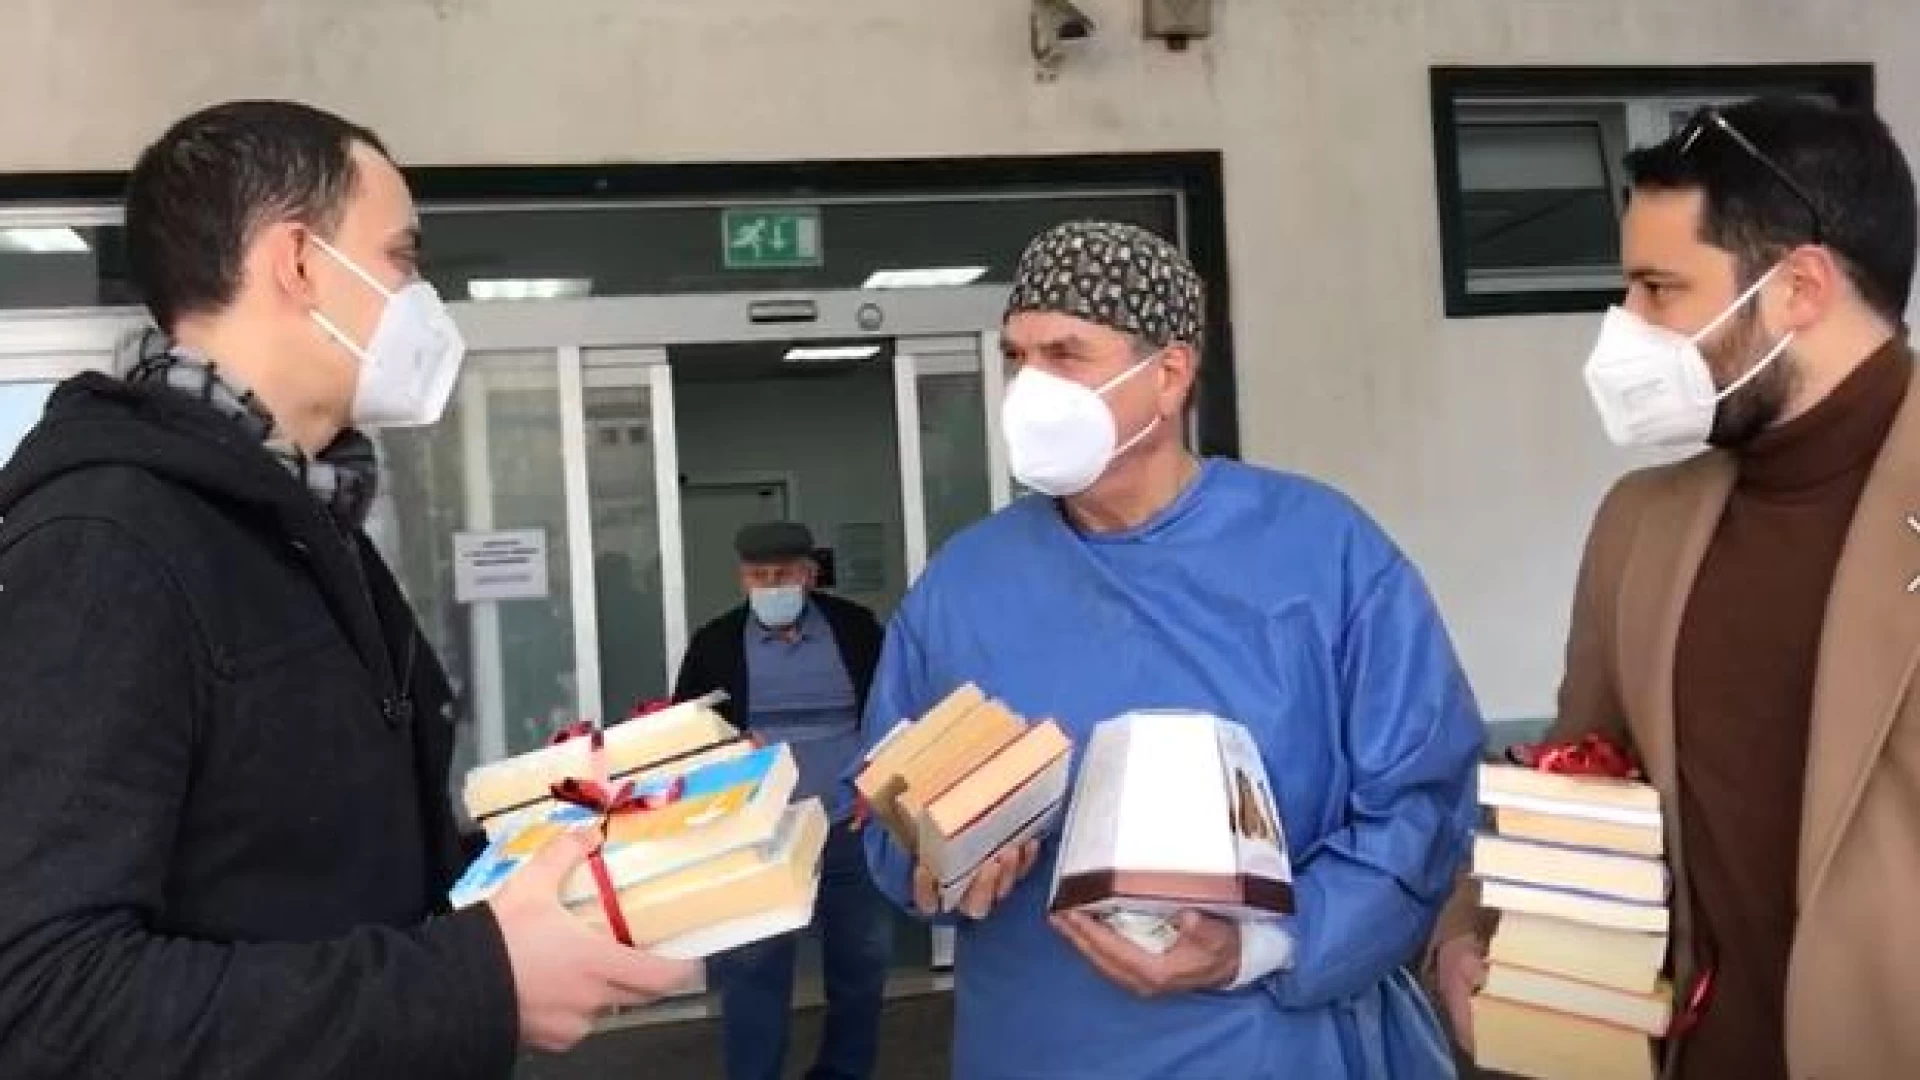 L'Associazione Read Is consegna libri ad alcuni reparti dell'Ospedale Veneziale. Guarda il video